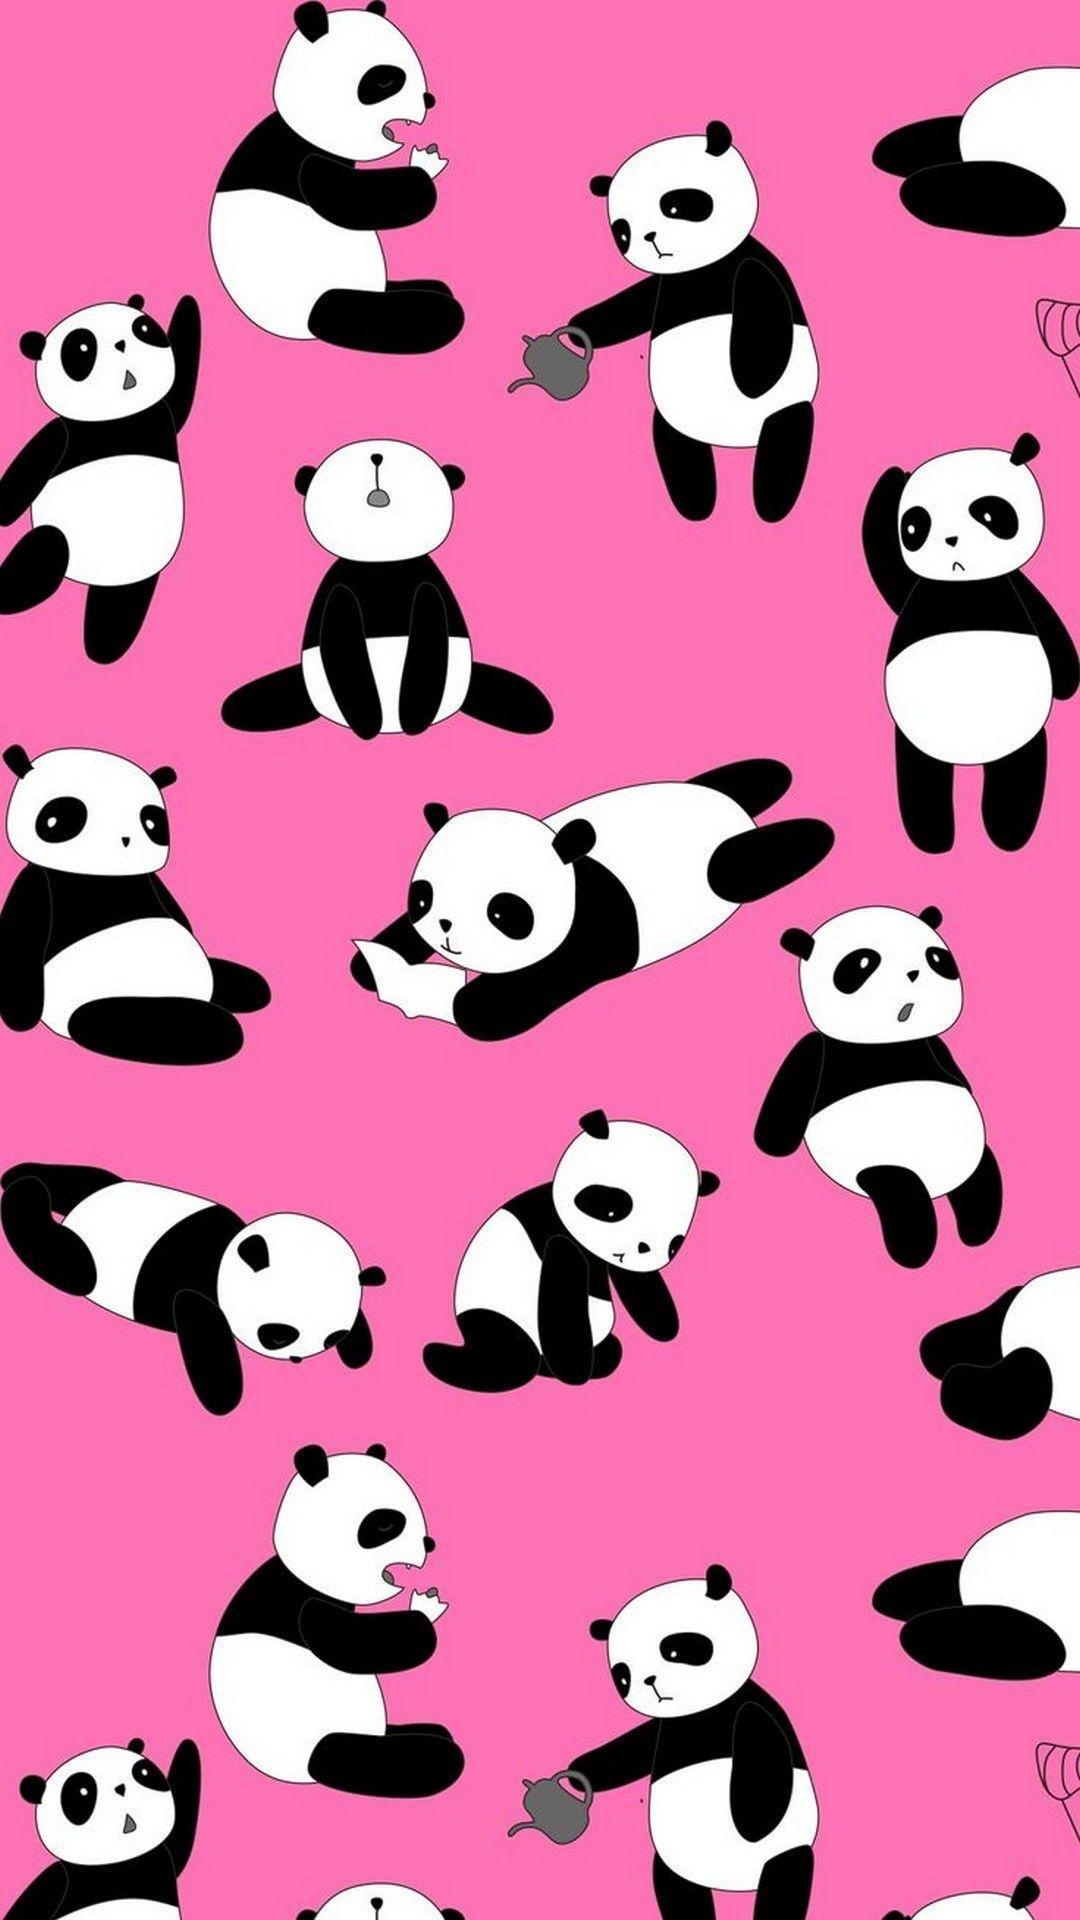  Pink  Haeart wallpapers  Panda  Wallpaper  Cave